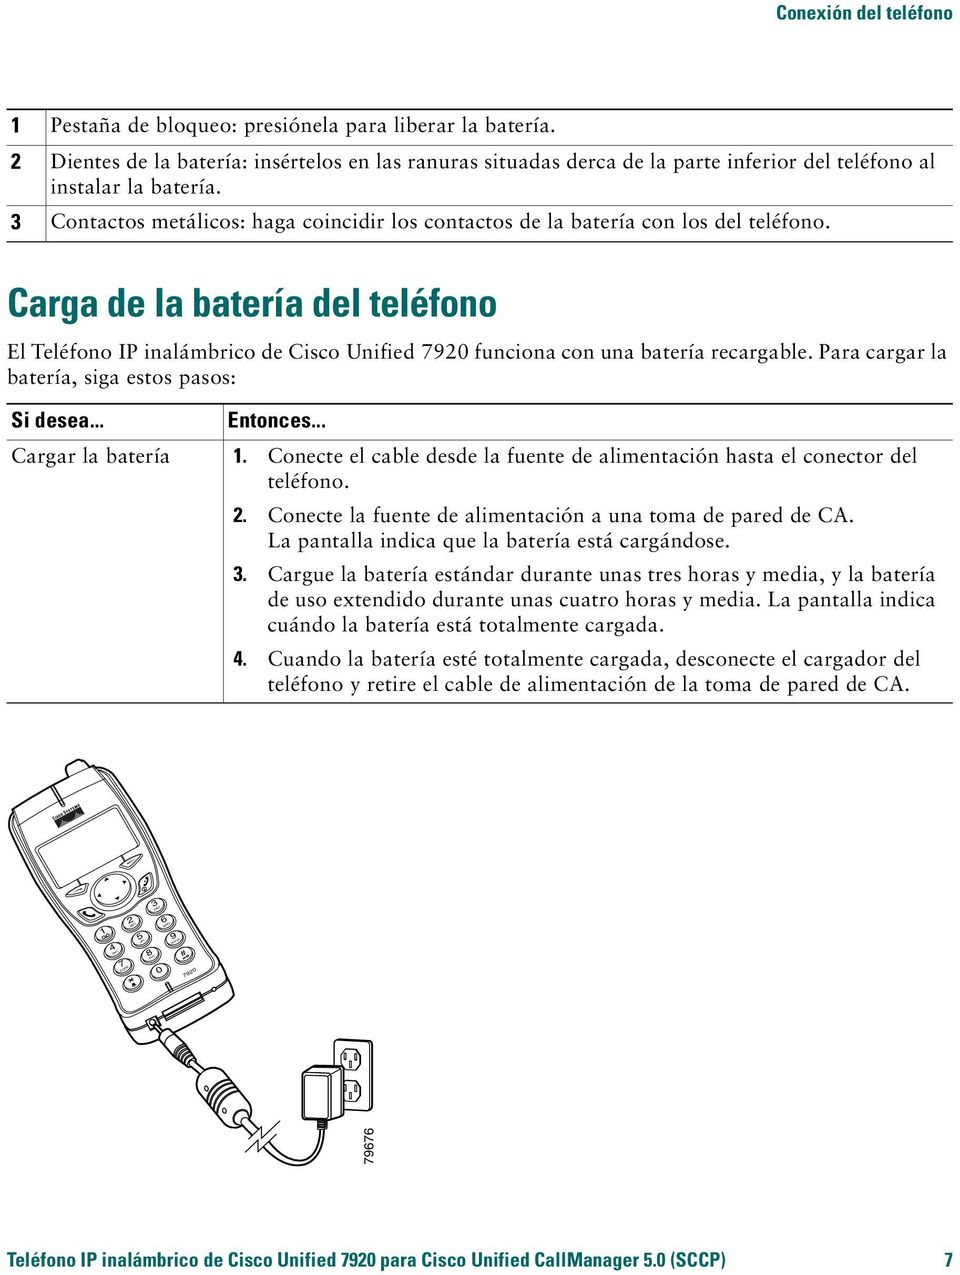 3 Contactos metálicos: haga coincidir los contactos de la batería con los del teléfono.